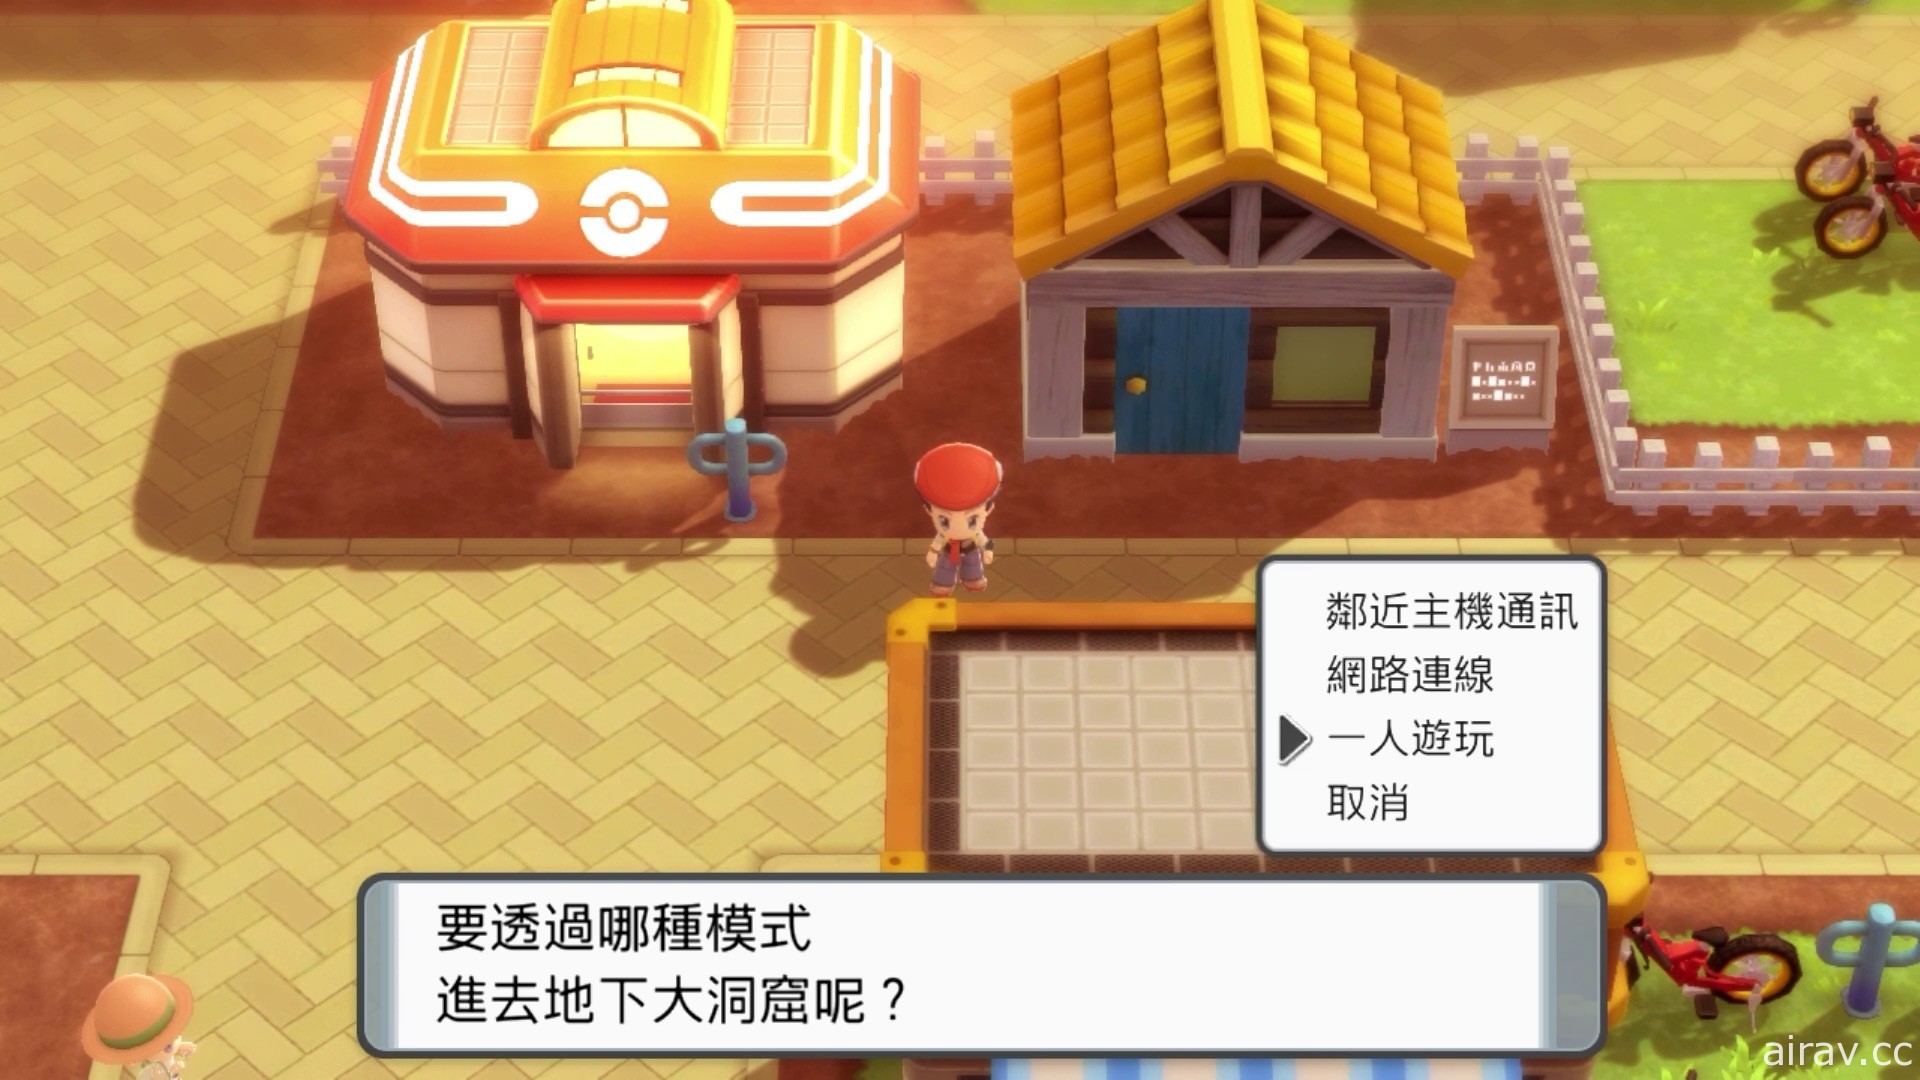 【試玩】《寶可夢 晶燦鑽石／明亮珍珠》中文版初期實機遊玩內容搶先看